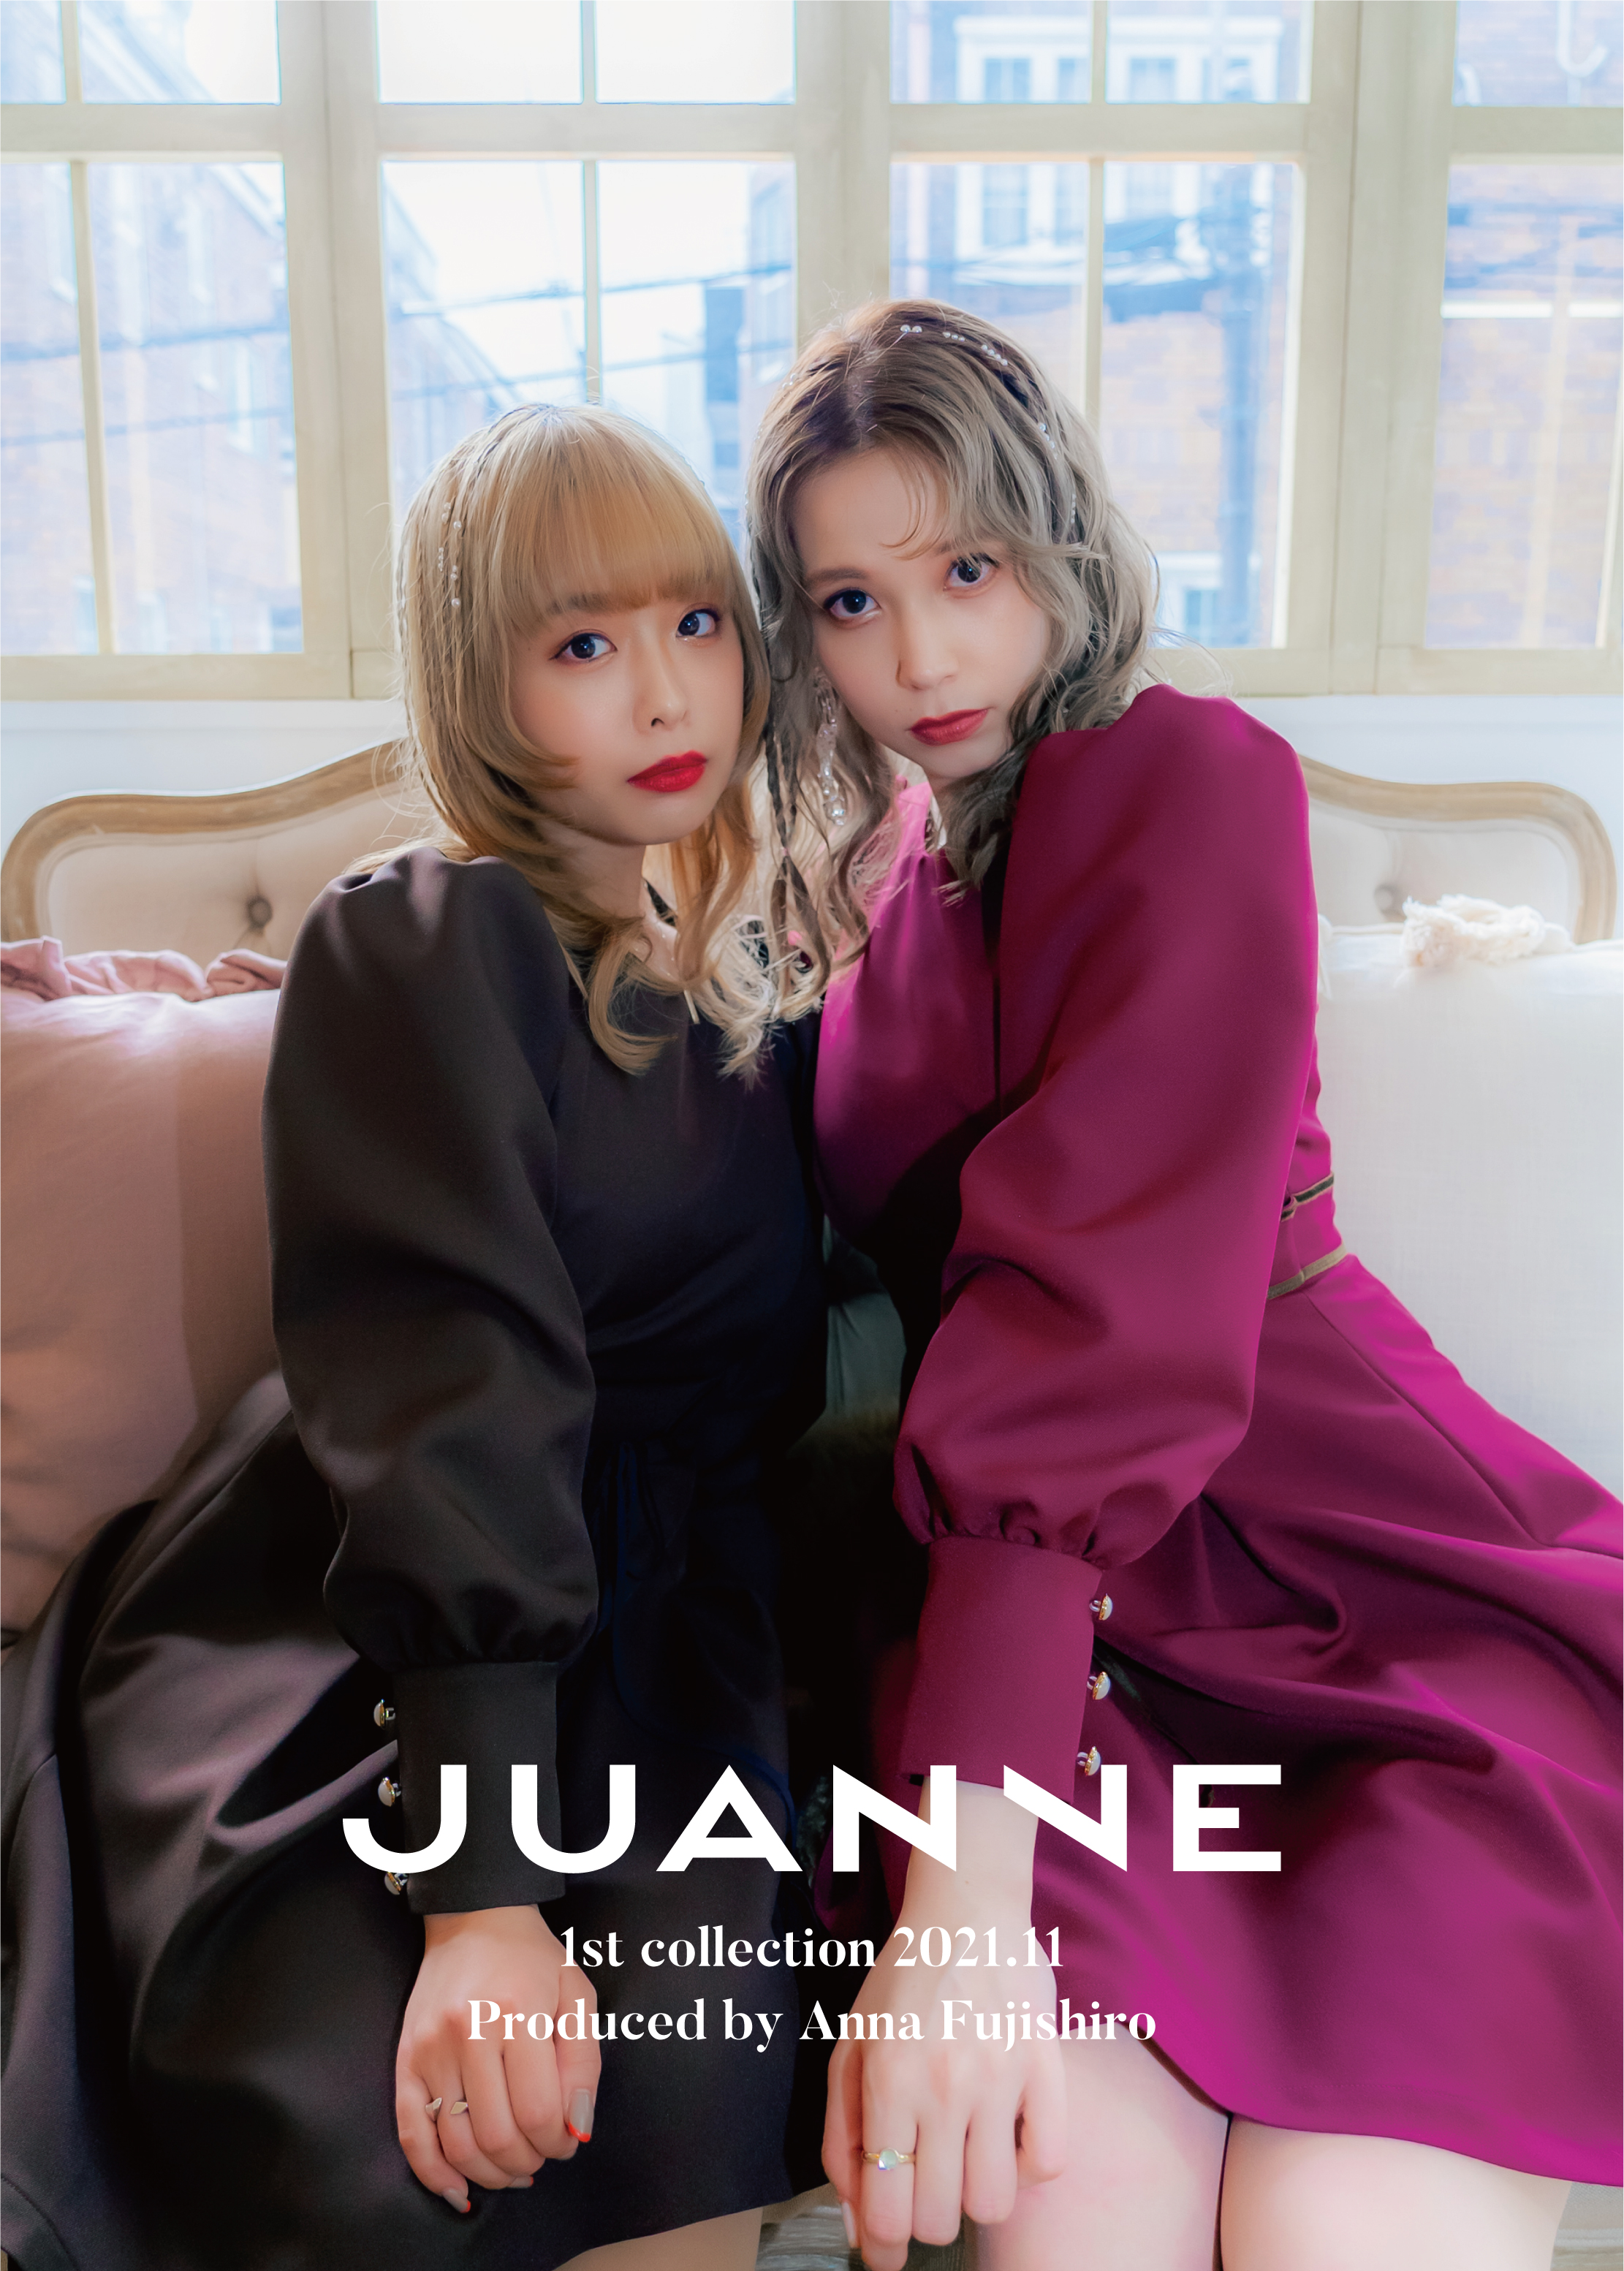 Juanne 1st collection & ポップアップ開催のお知らせ